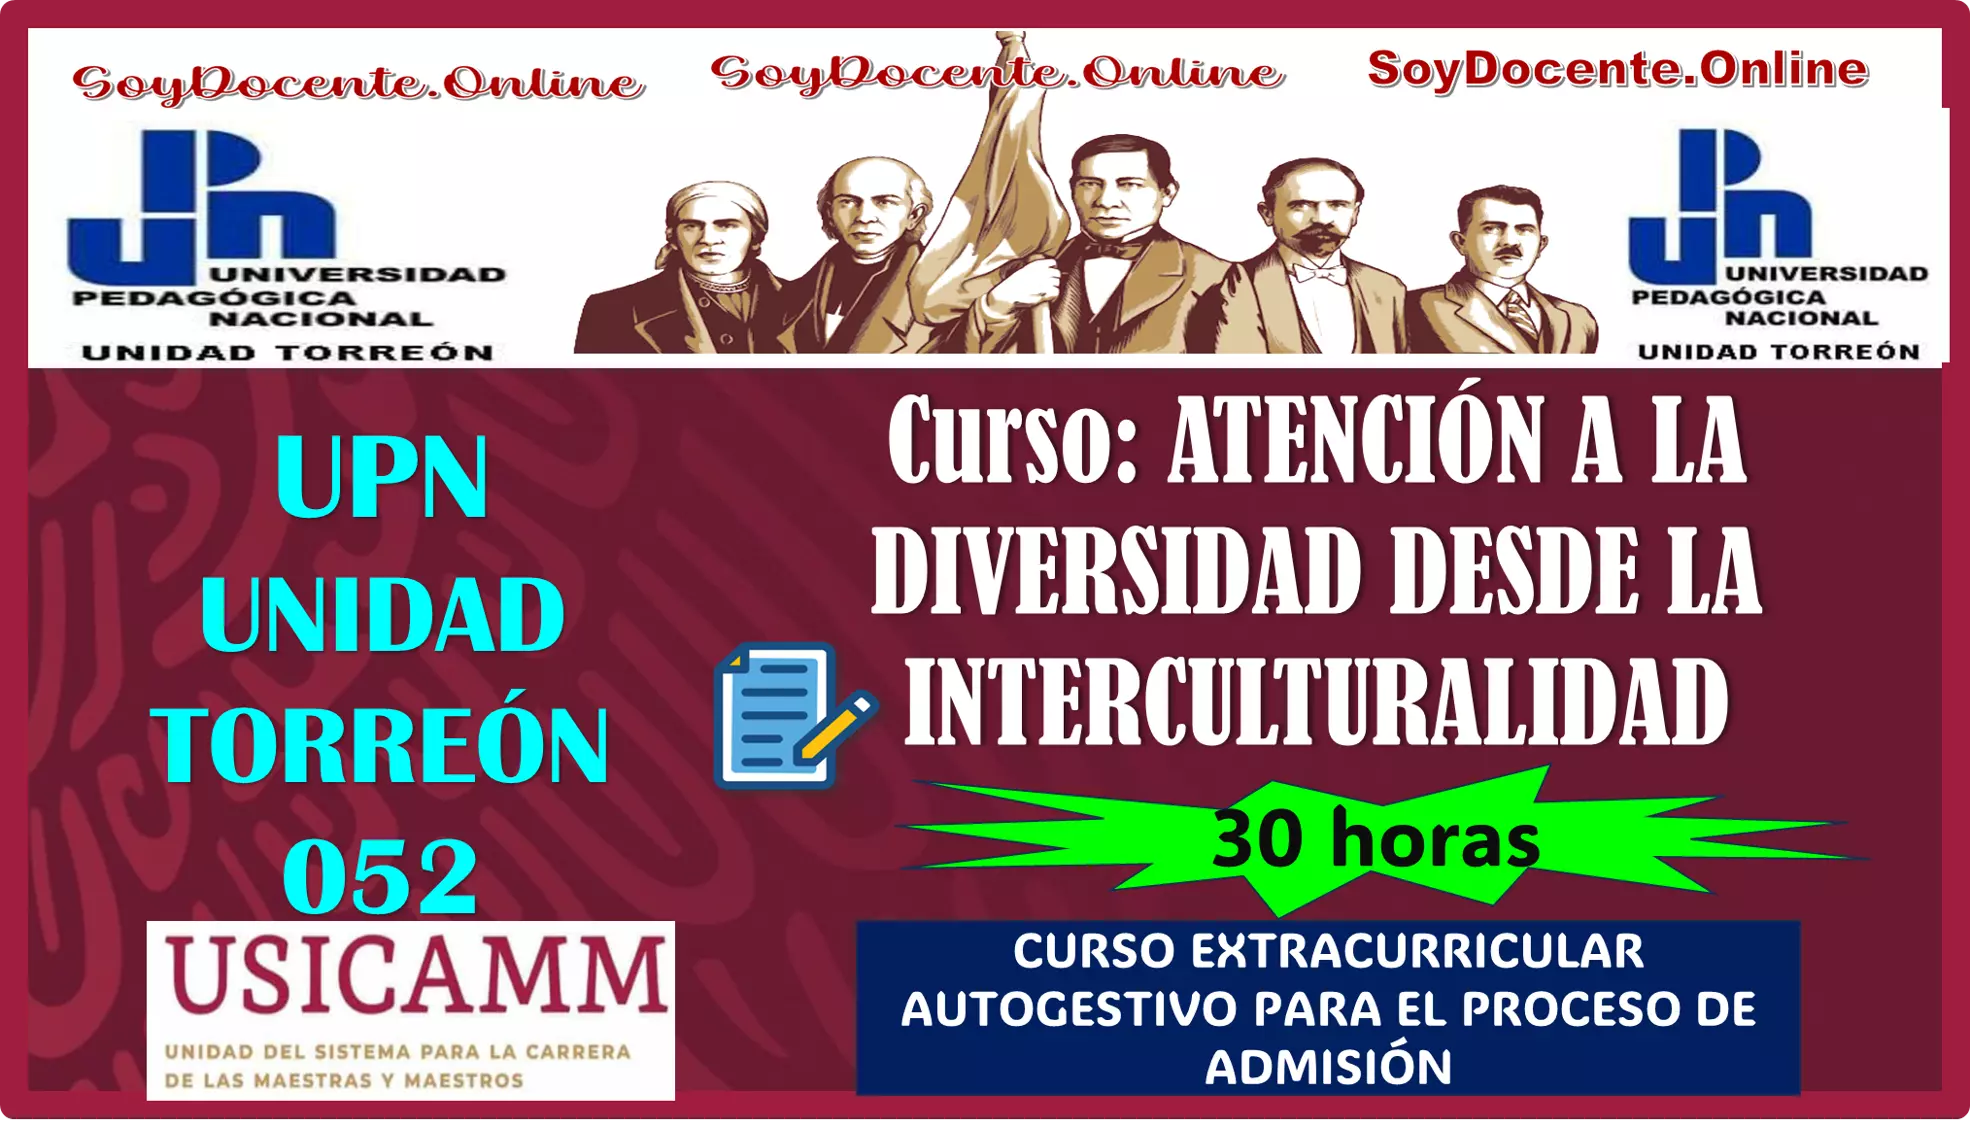 La Universidad Pedagógica Nacional Unidad Torreón 052 convoca a curso de: ATENCIÓN A LA DIVERSIDAD DESDE LA INTERCULTURALIDAD CON 30 HORAS (USICAMM)